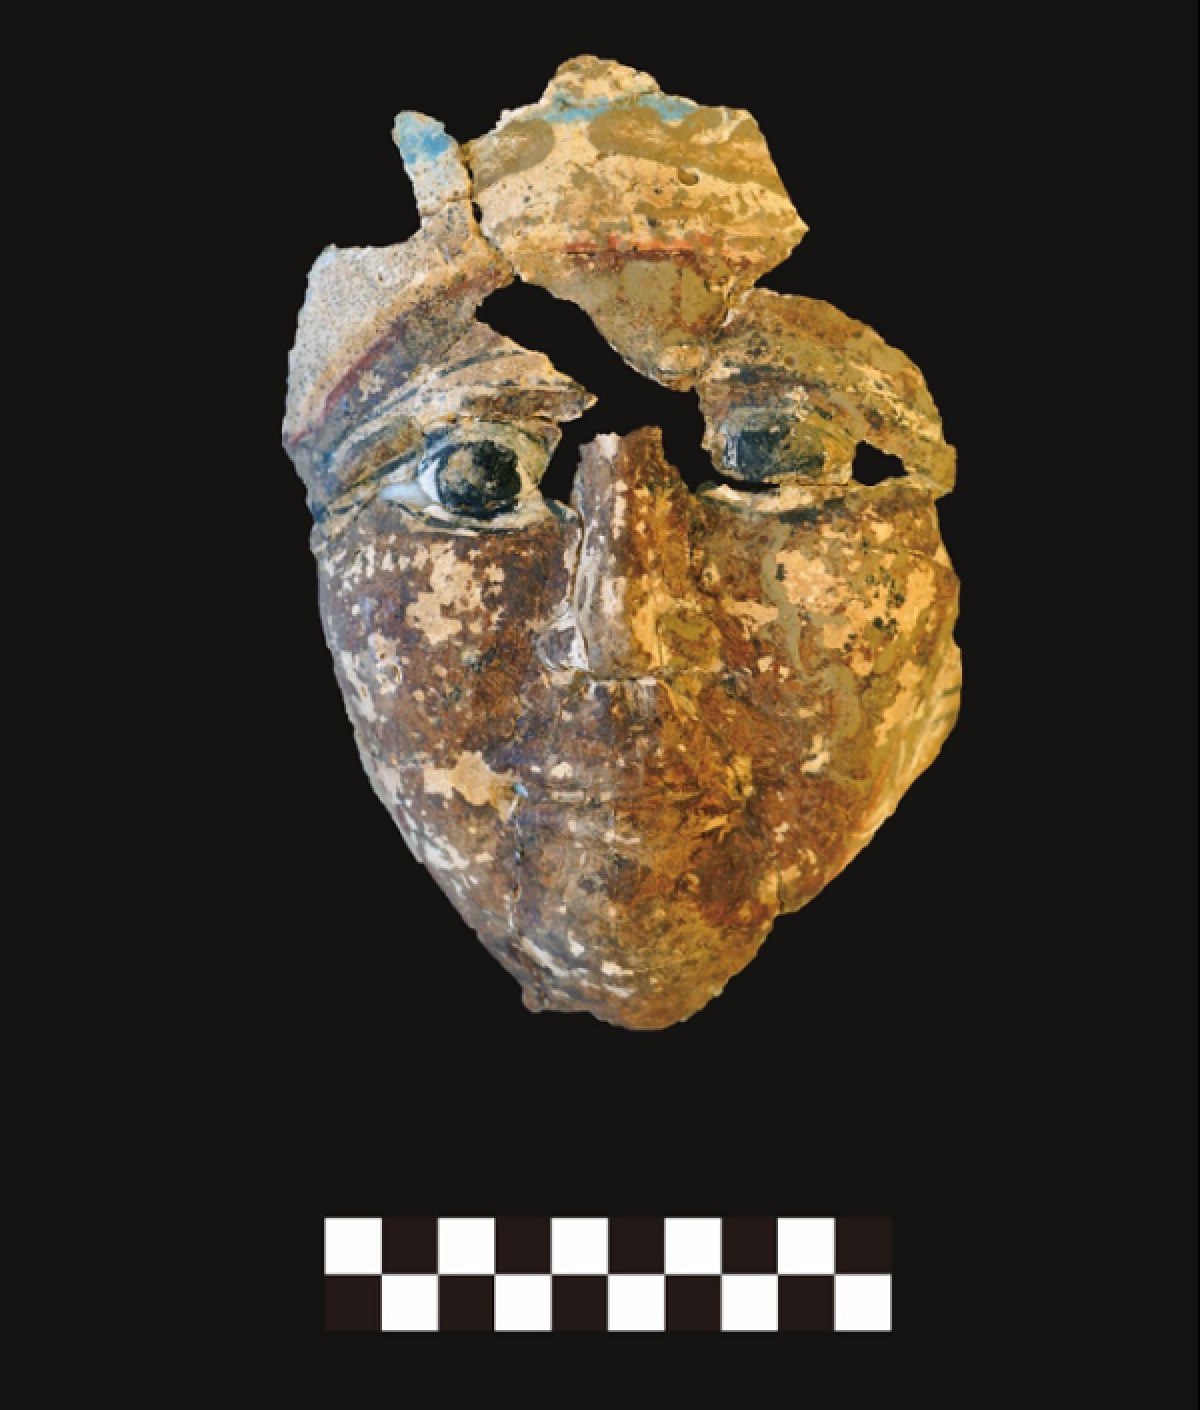 У Єгипті знайшли 4500-річну гробницю з артефактами та скелетом дитини